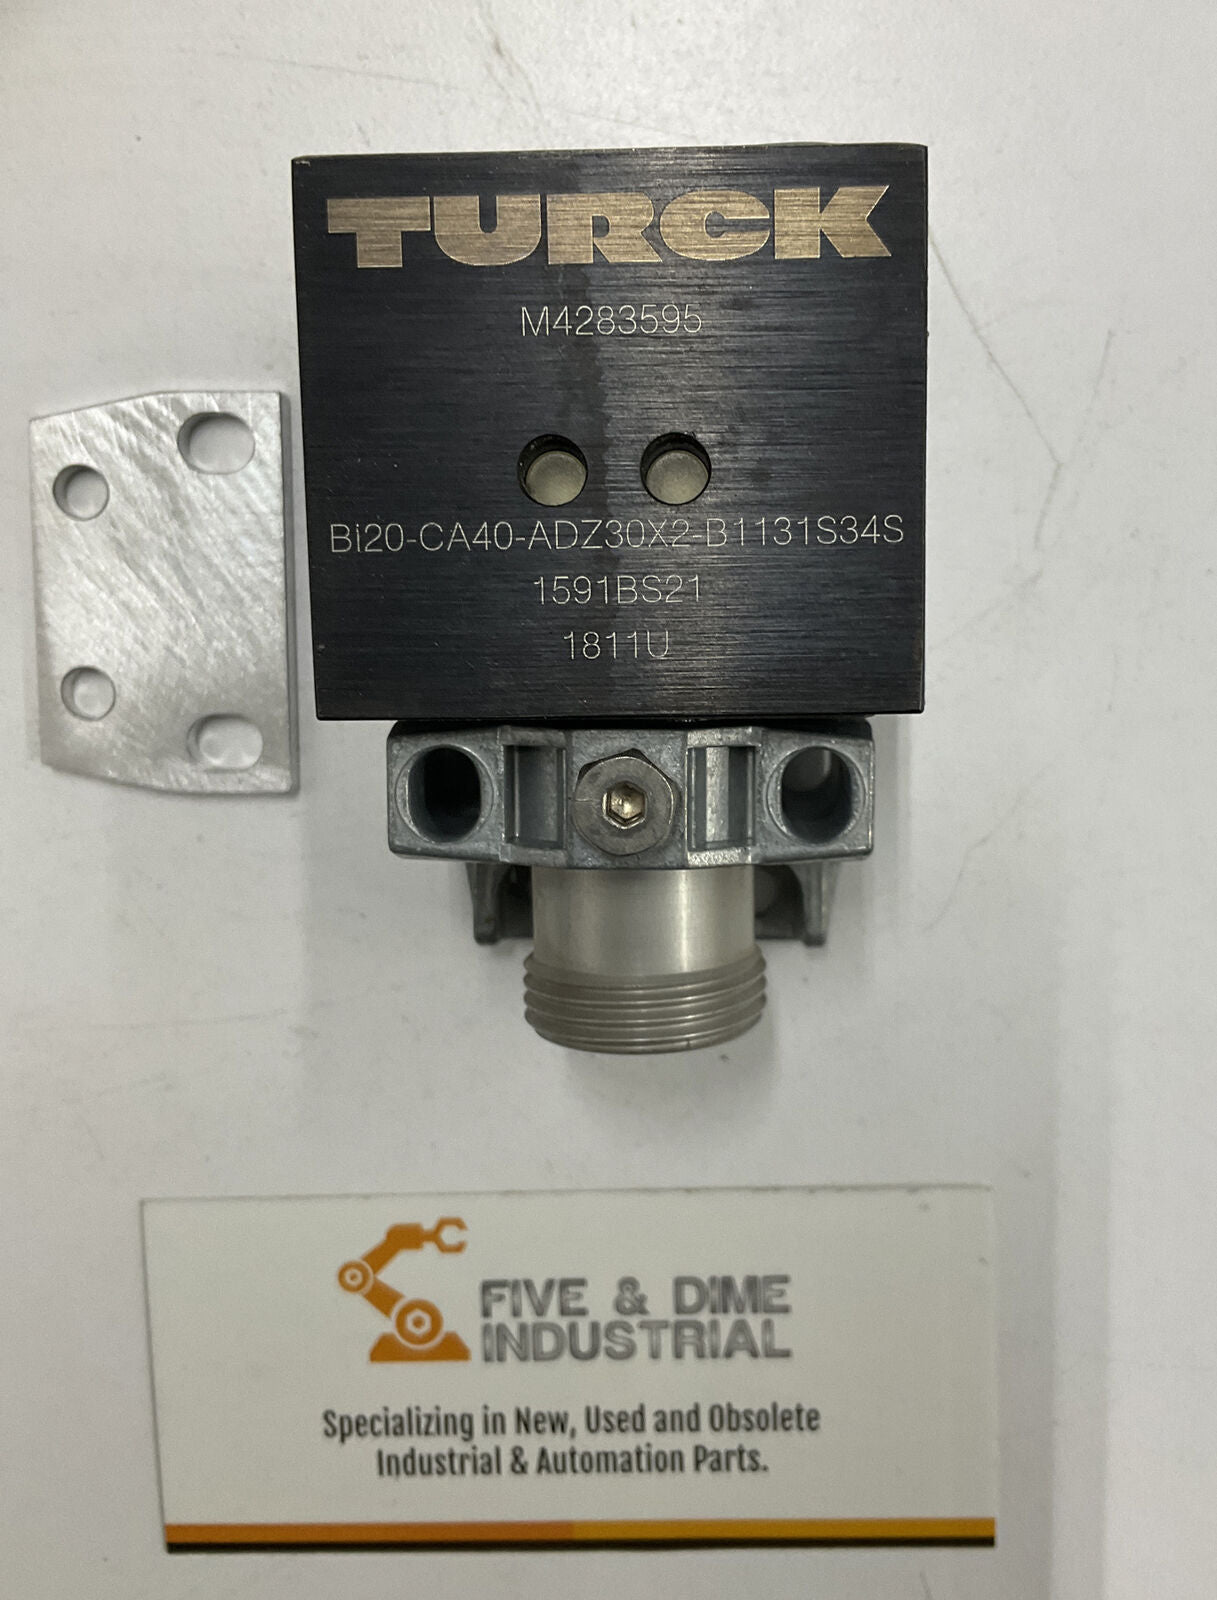 Turck BI20-CA40-ADZ30X2-B1131/S34/S159 Proximity Switch M4283595 (RE123) - 0